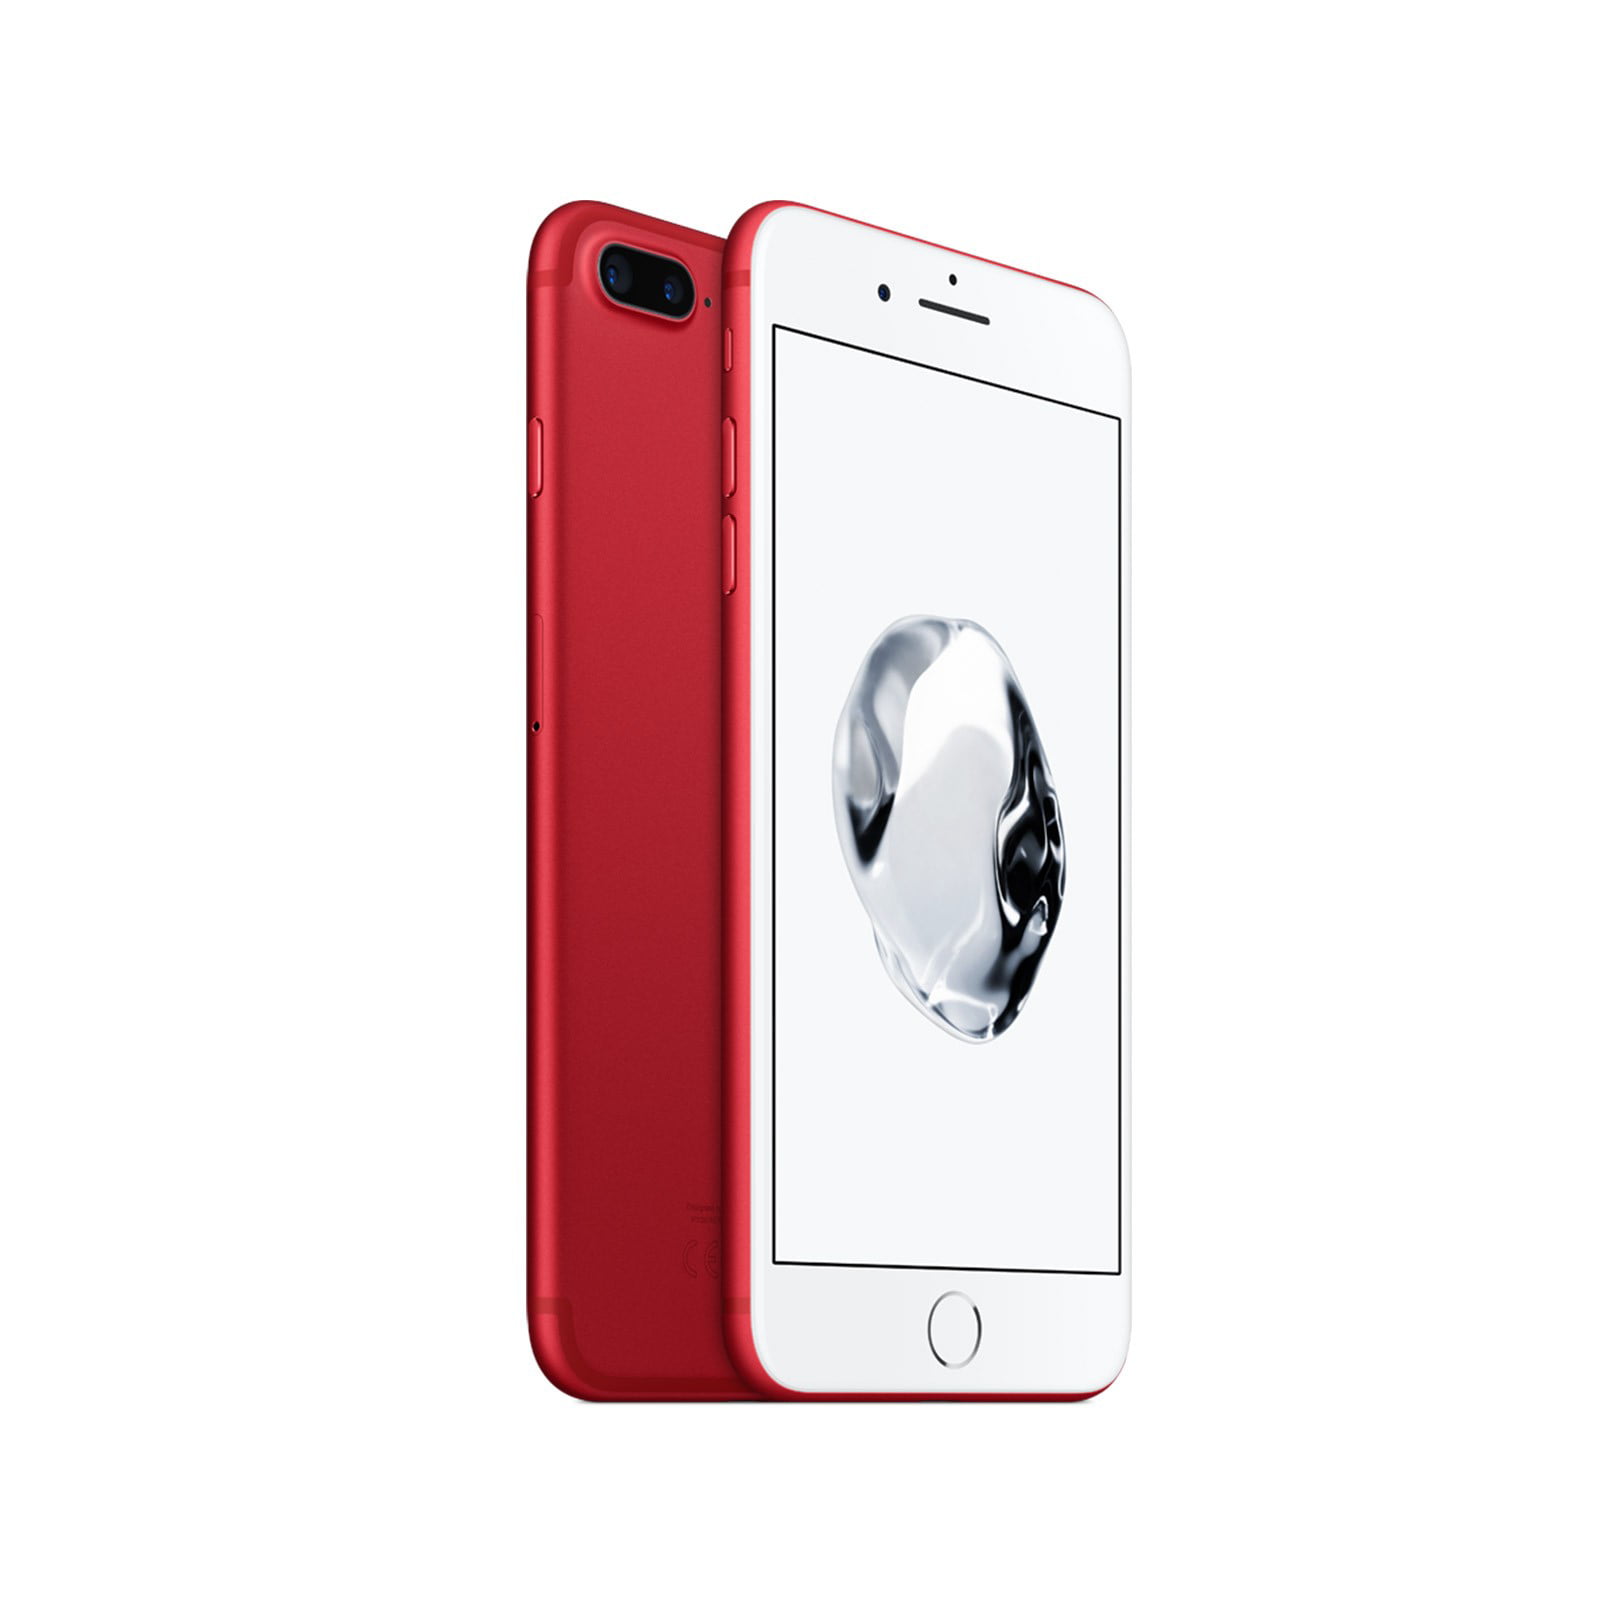 Maxis 签购iPhone 7 红色版本，最低只需 RM 2415